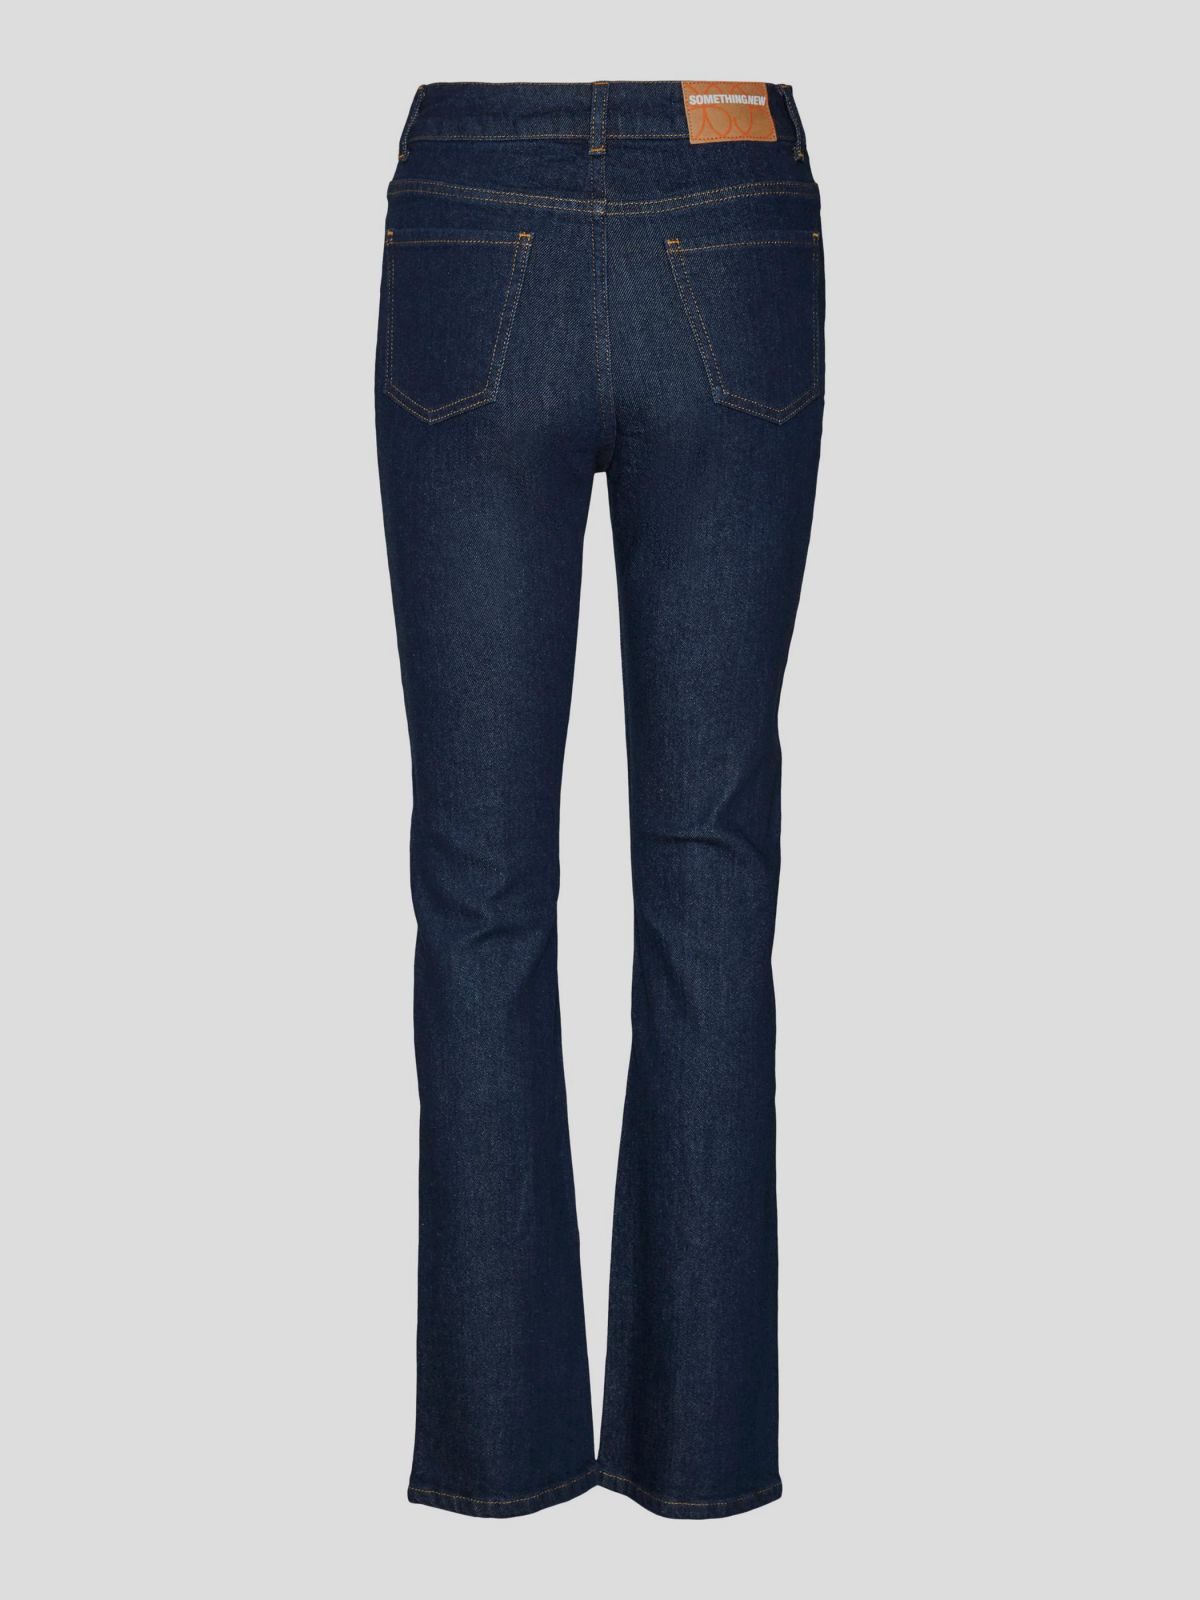  ג'ינס בגזרה ישרה עם פתחים של SOMETHINGNEW